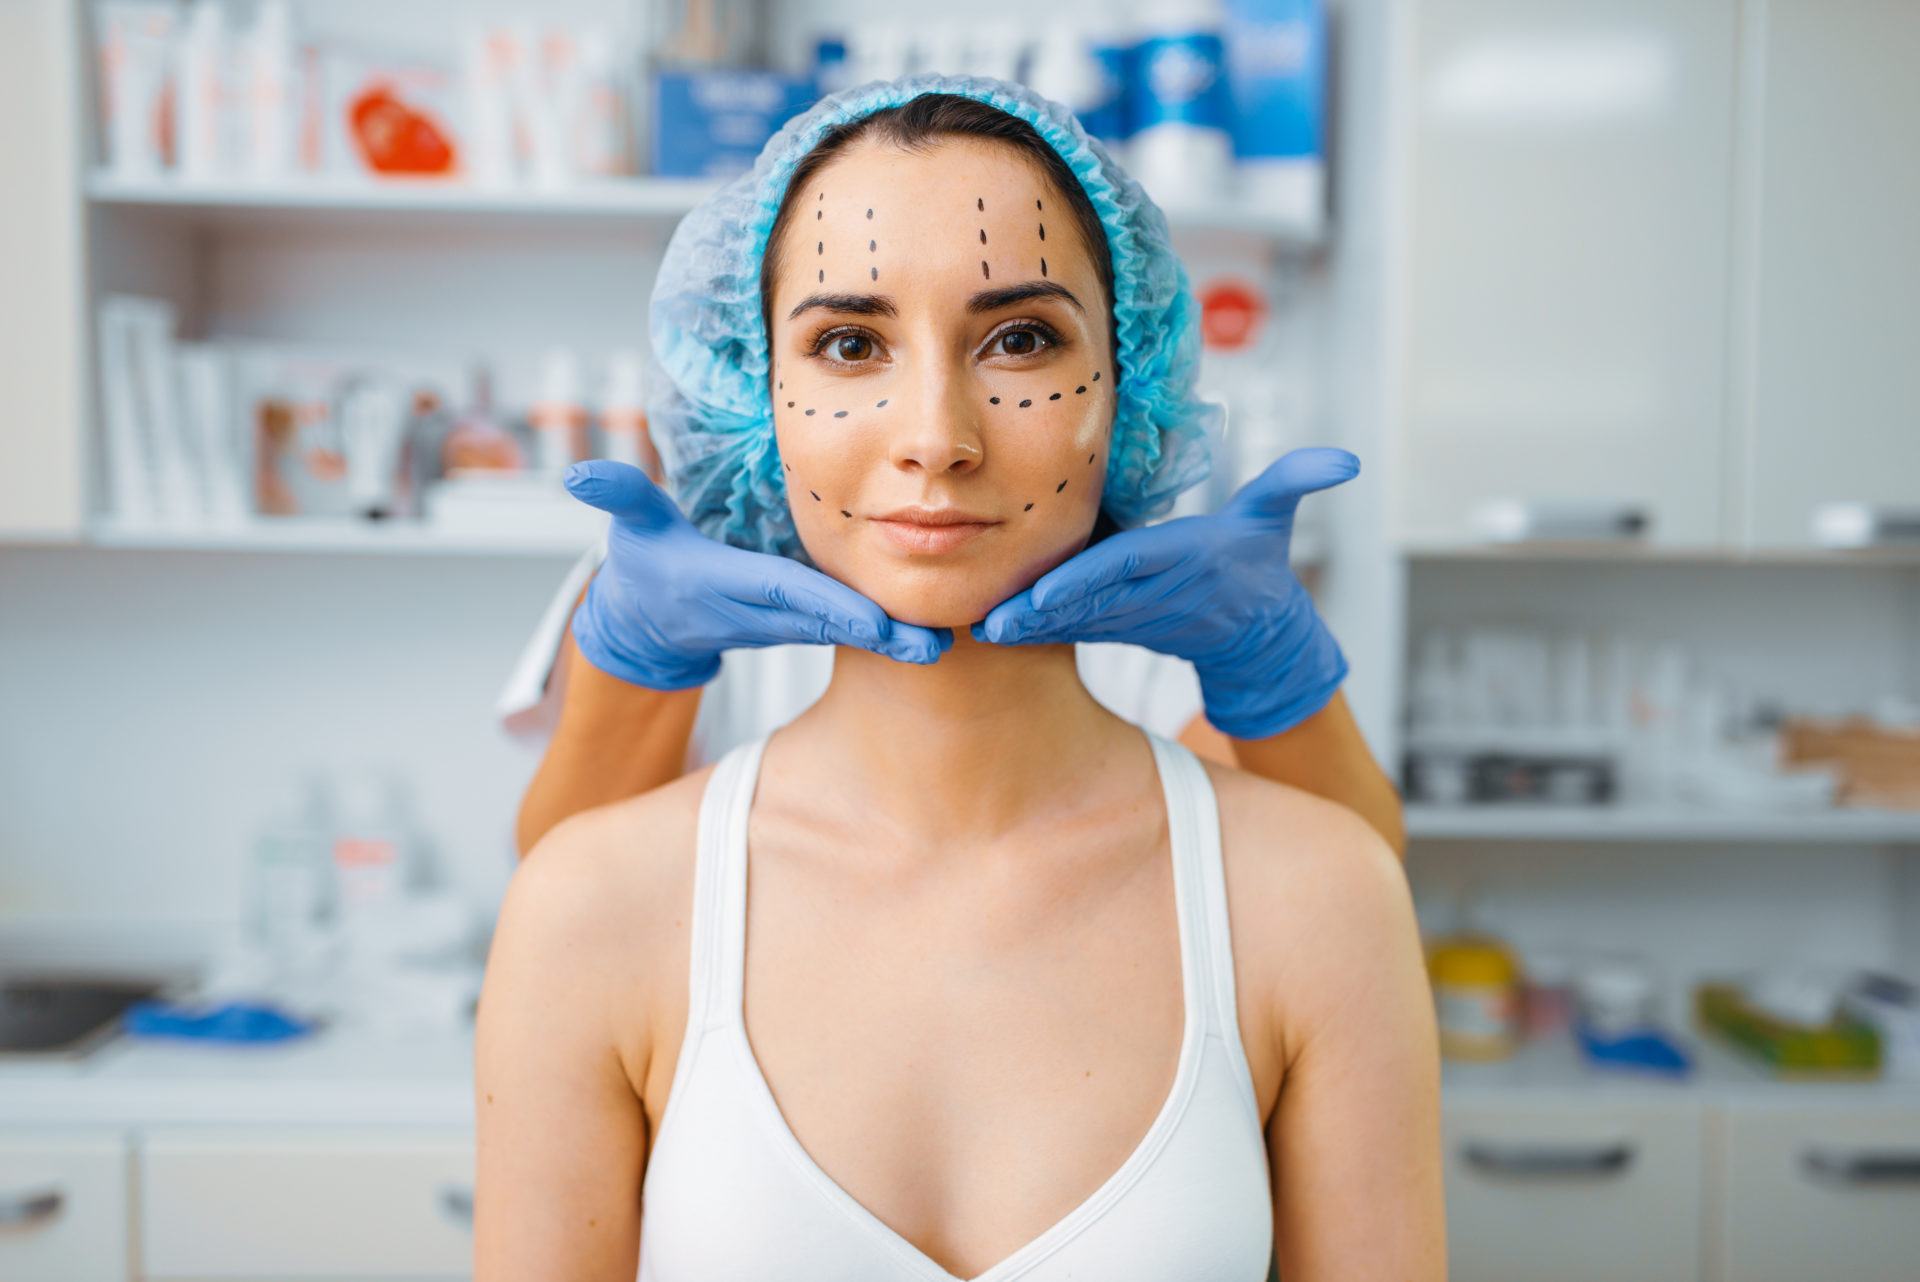 Kvinde gøres klar til ansigtsoperation. Er optegnet i ansigtet for at vise hvor indgrebet skal udføres.